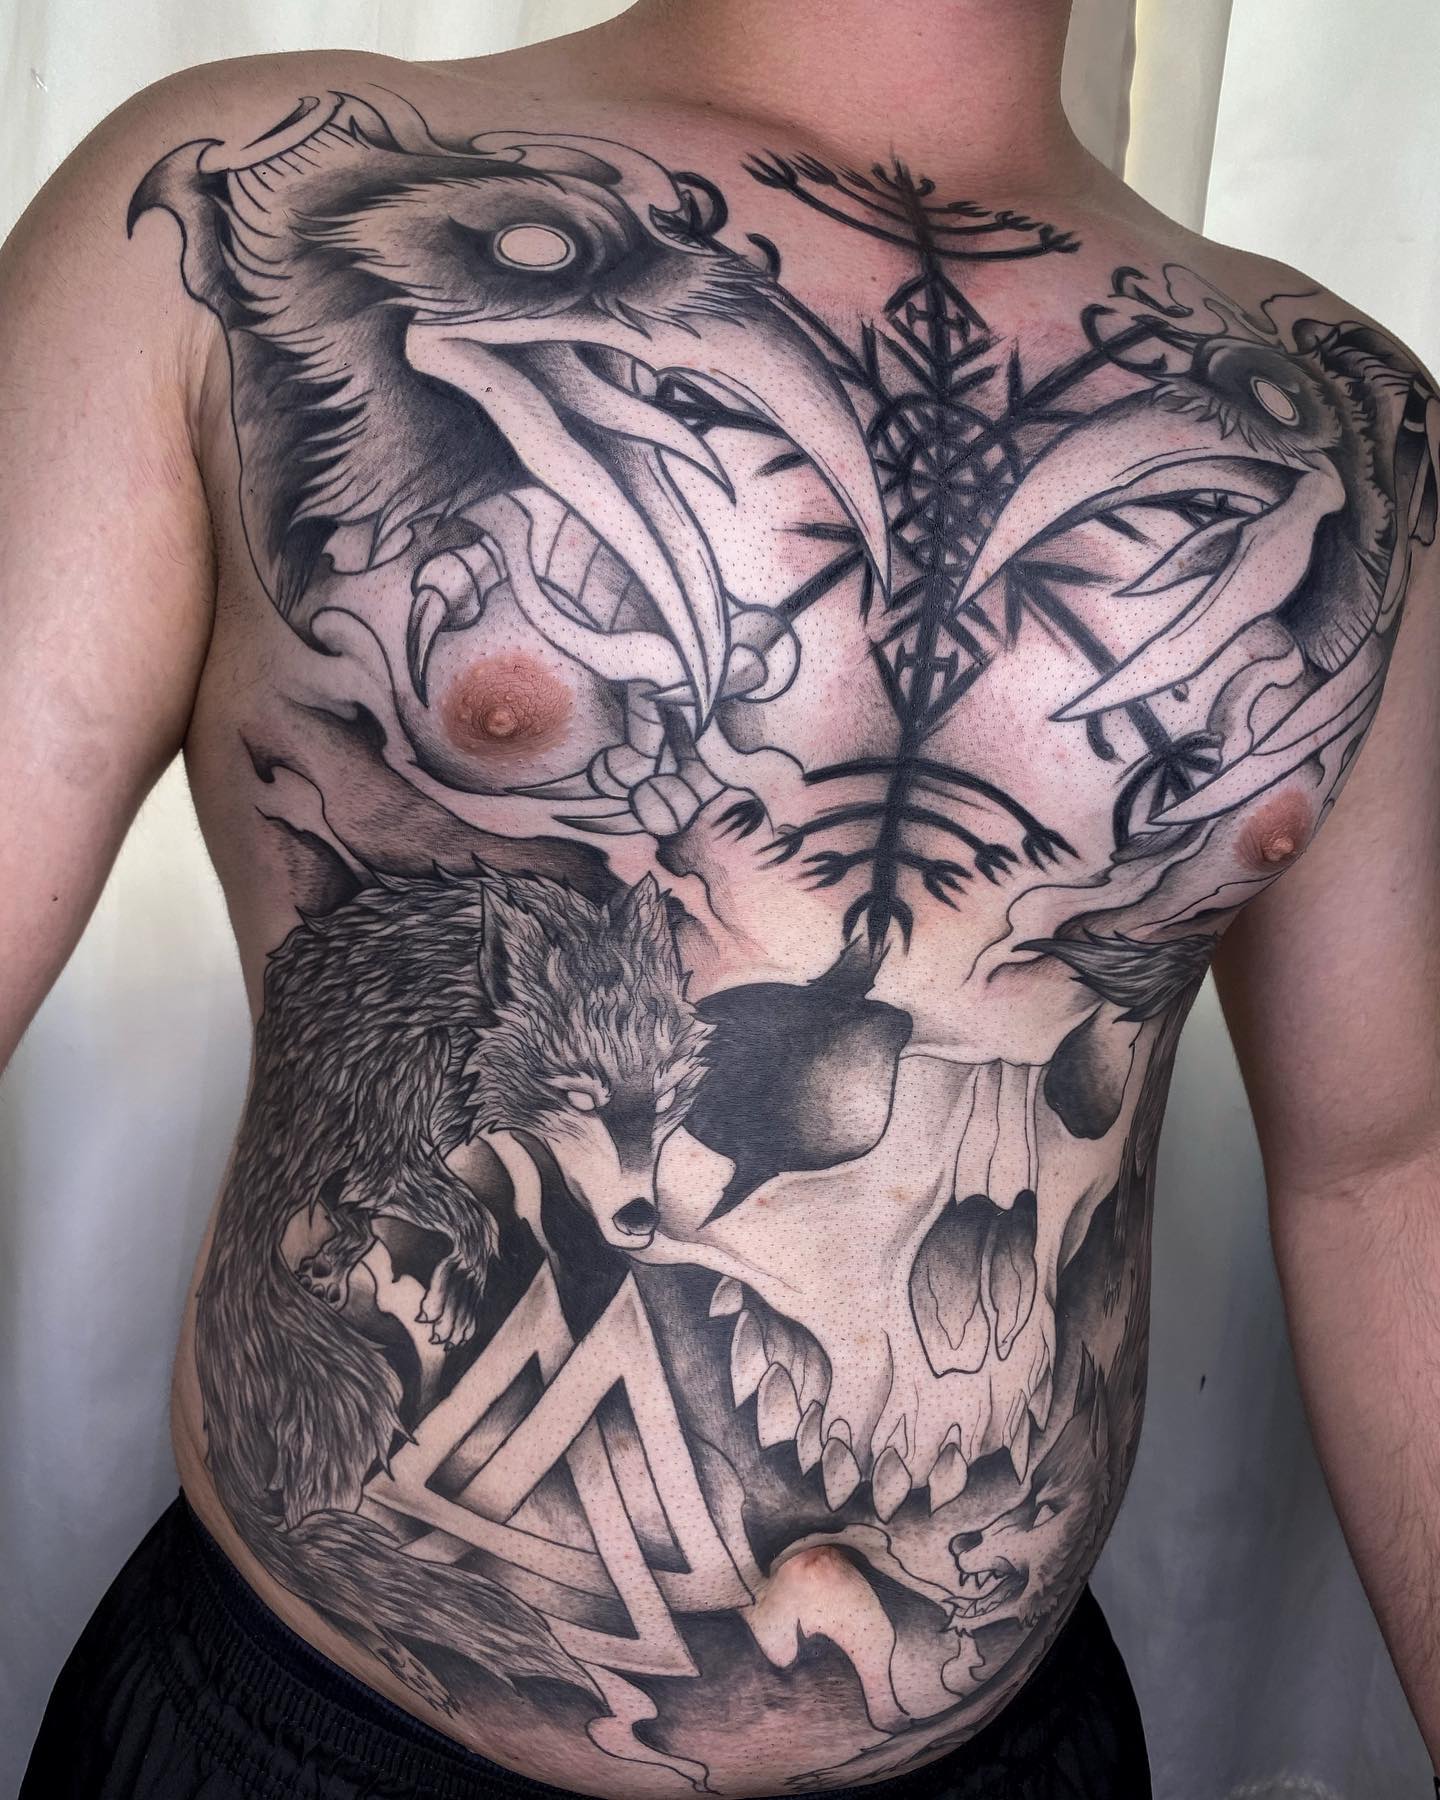 Tatuaż kruków na całym ciele